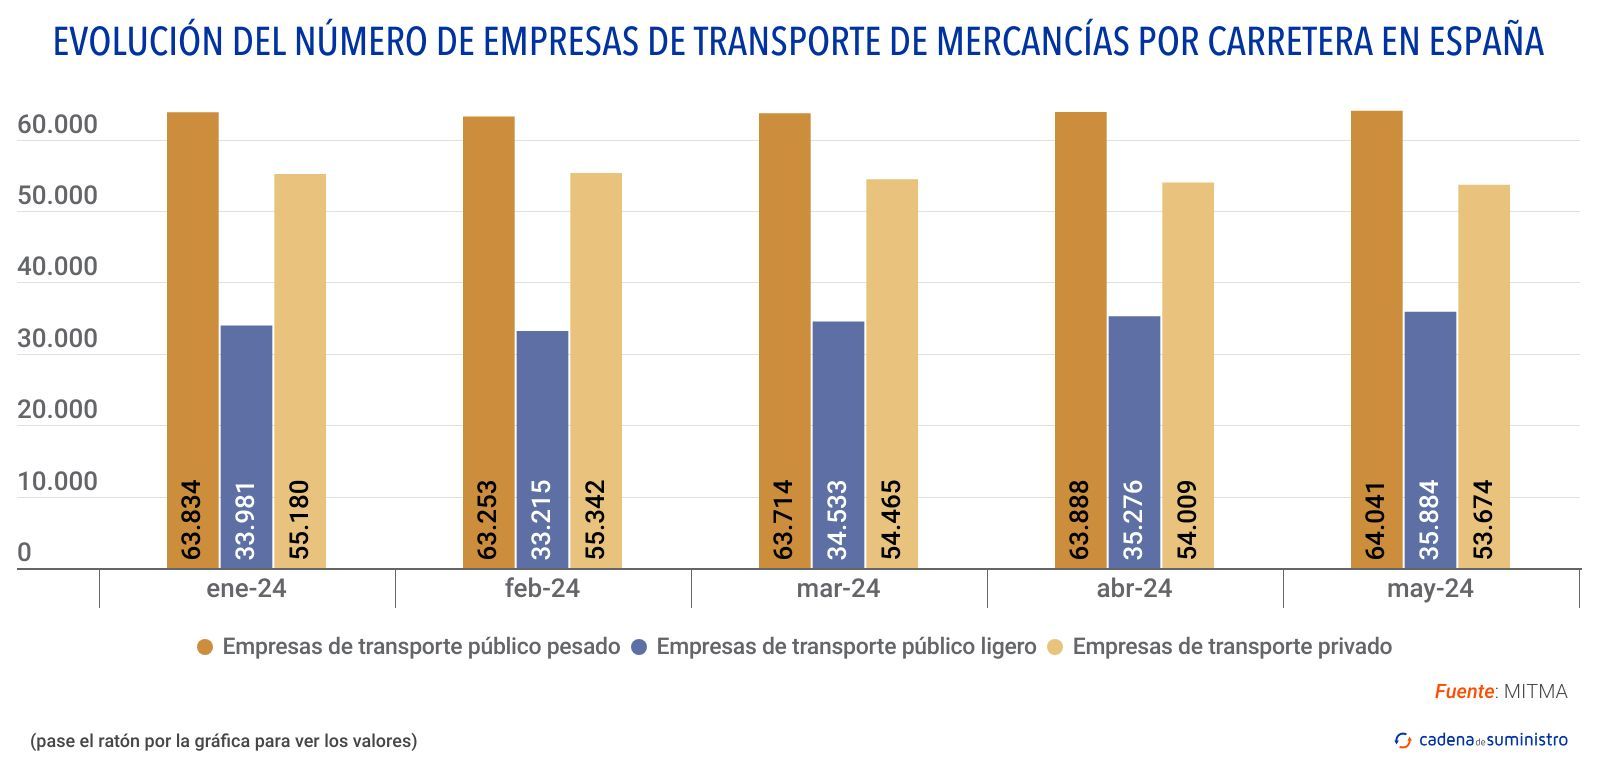 evolucion del numero de empresas de transporte de mercancias por carretera en espana